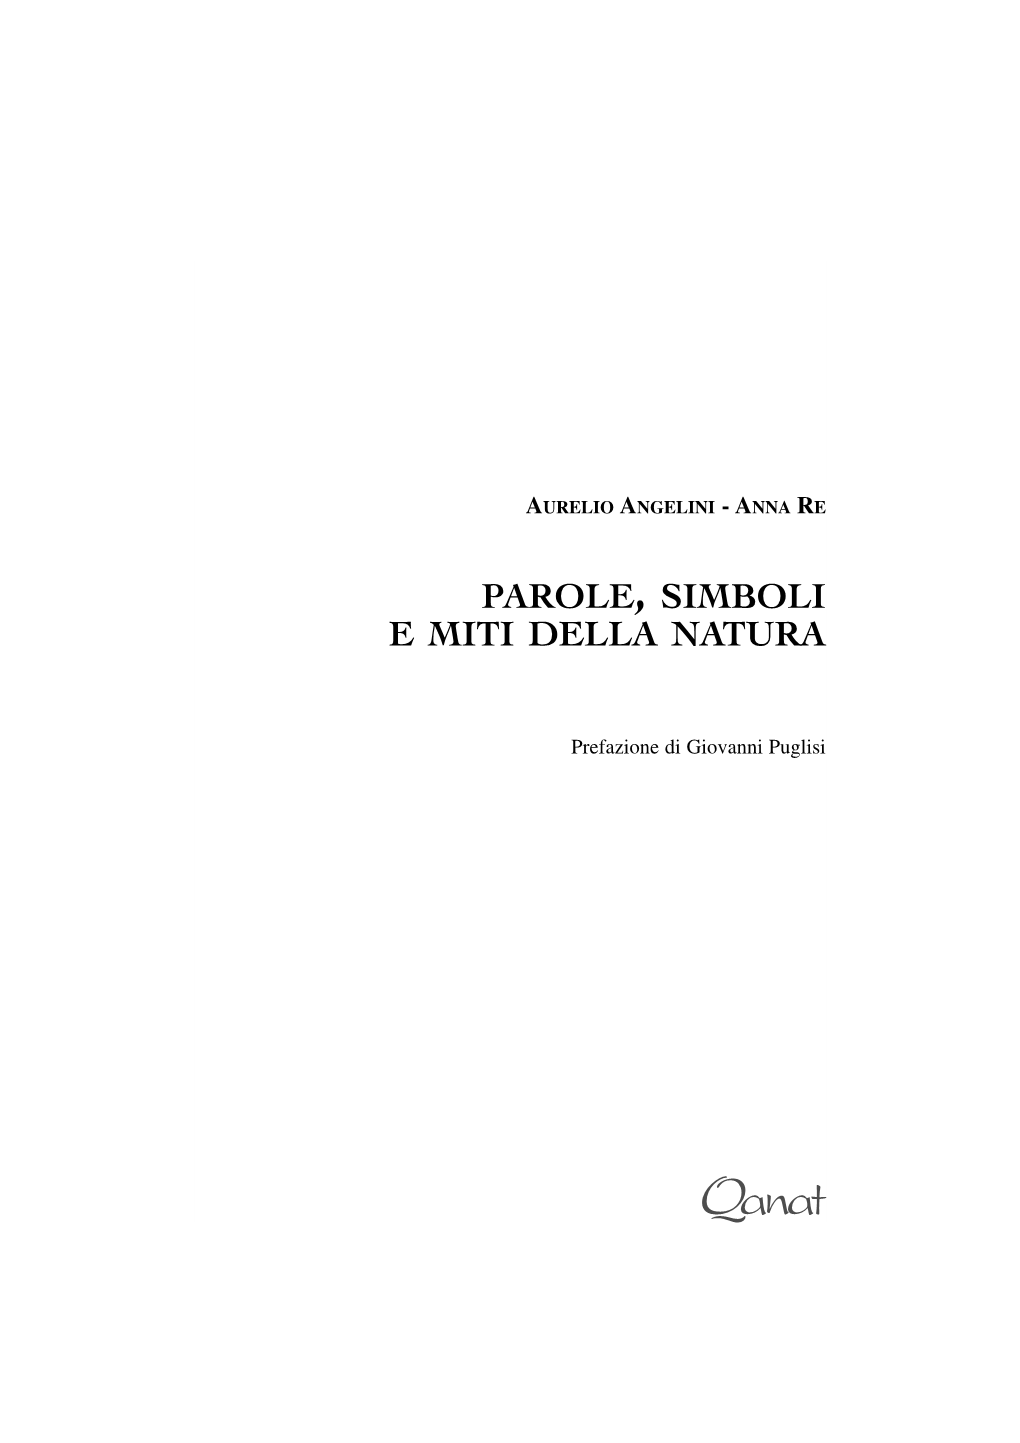 Parole, Simboli E Miti Della Natura 10 Aurelio Angelini - Anna Re